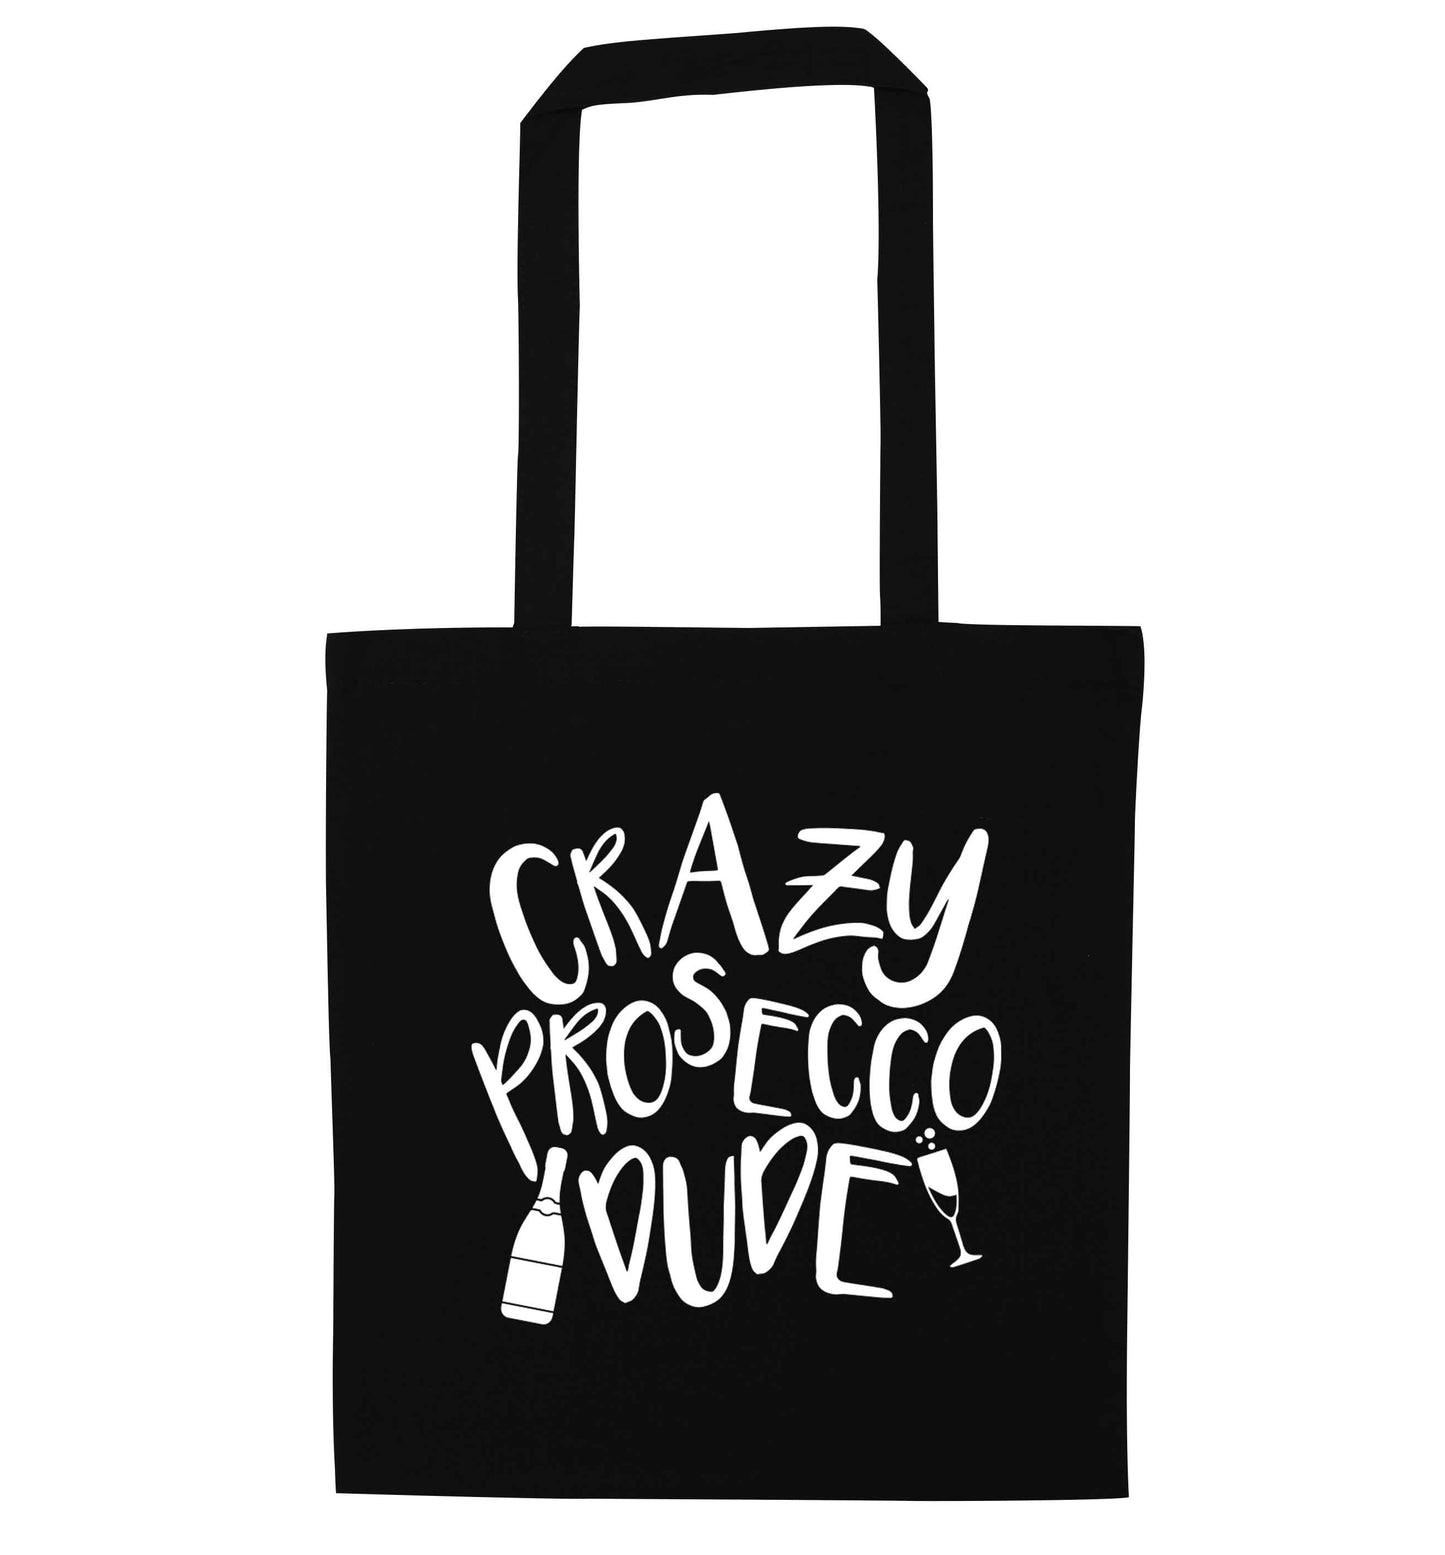 Crazy prosecco dude black tote bag